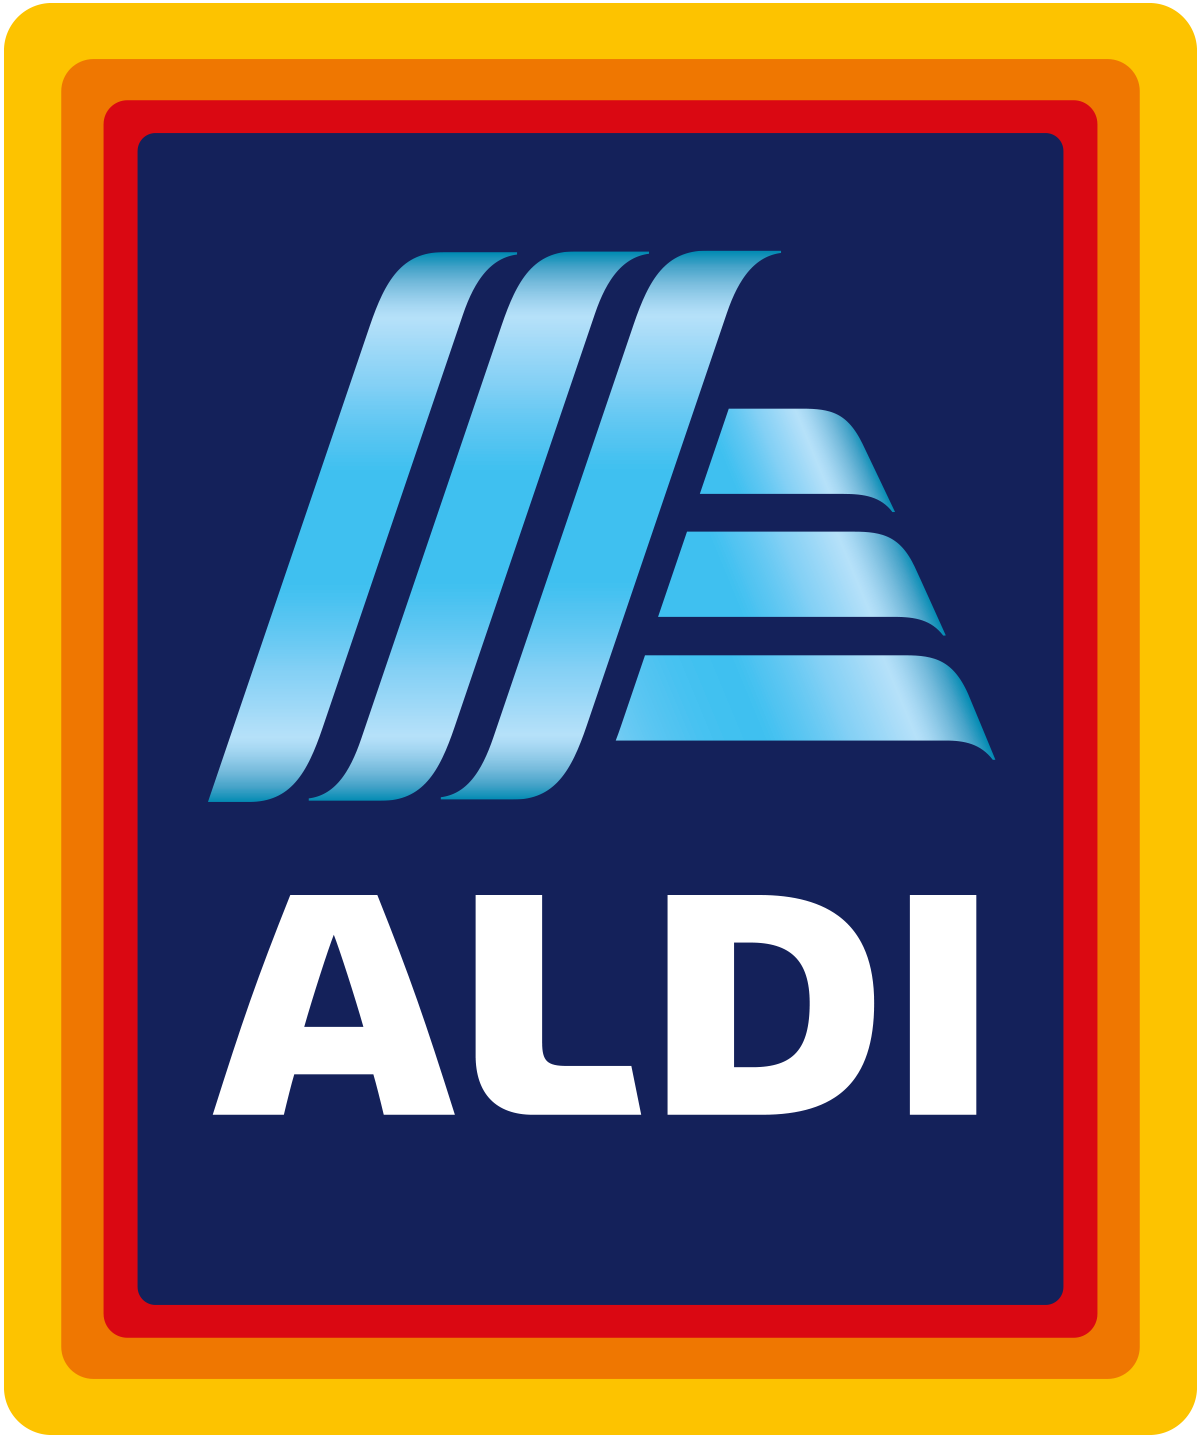 Aldi's